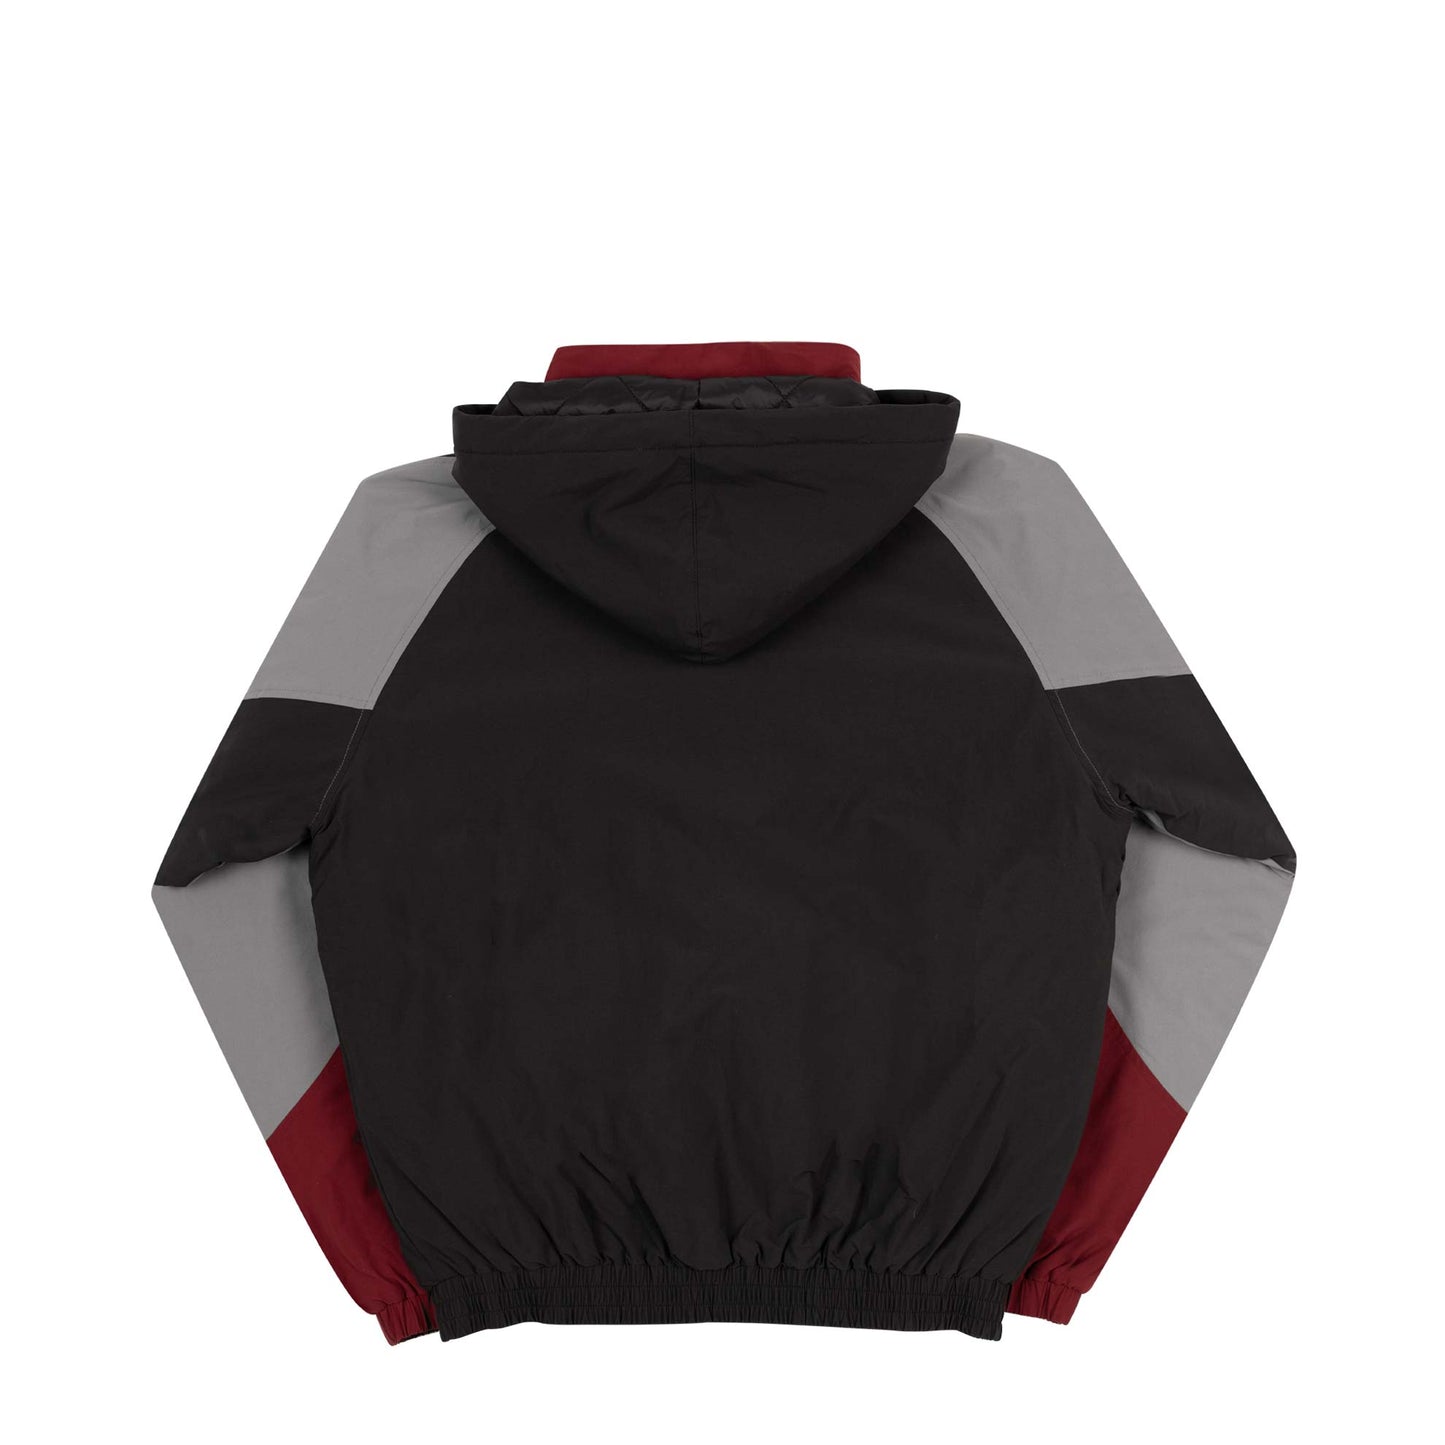 Genesis Jacket (Burgundy/Black/Grey)